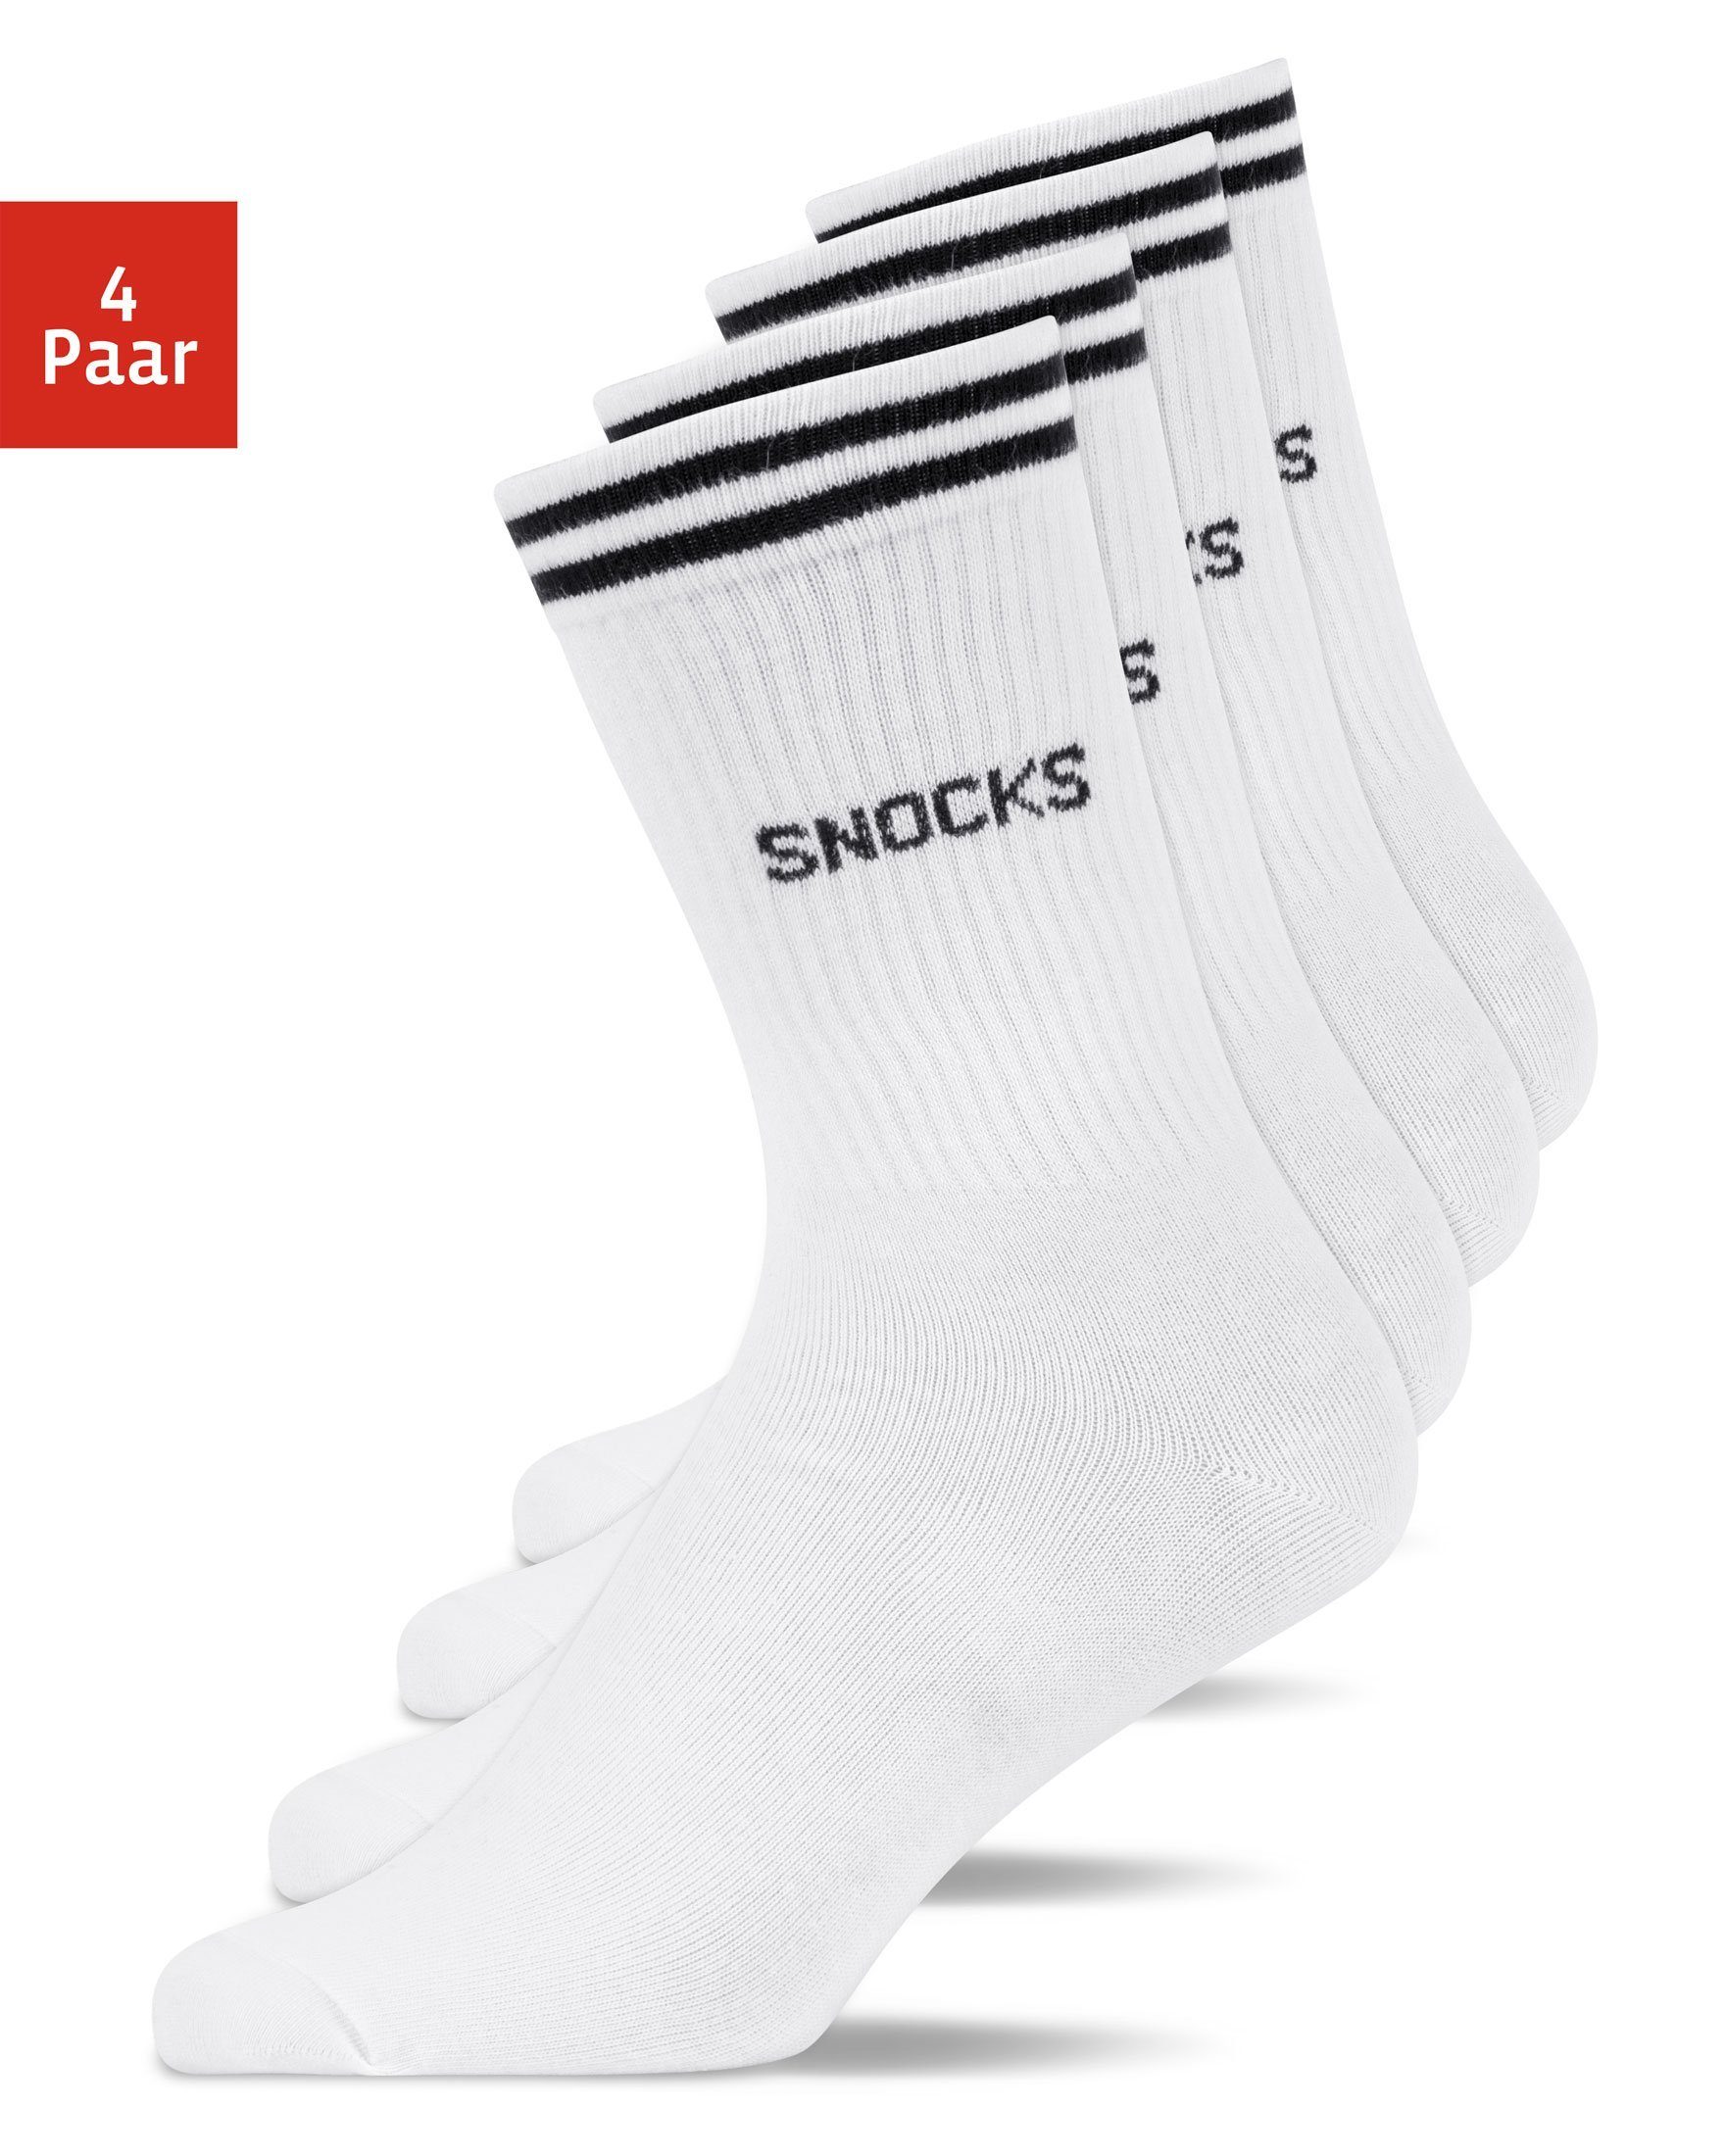 SNOCKS Sportsocken Hohe Tennissocken mit Streifen für Damen & Herren (4-Paar) aus Bio-Baumwolle, stylish für jedes Outfit Weiß